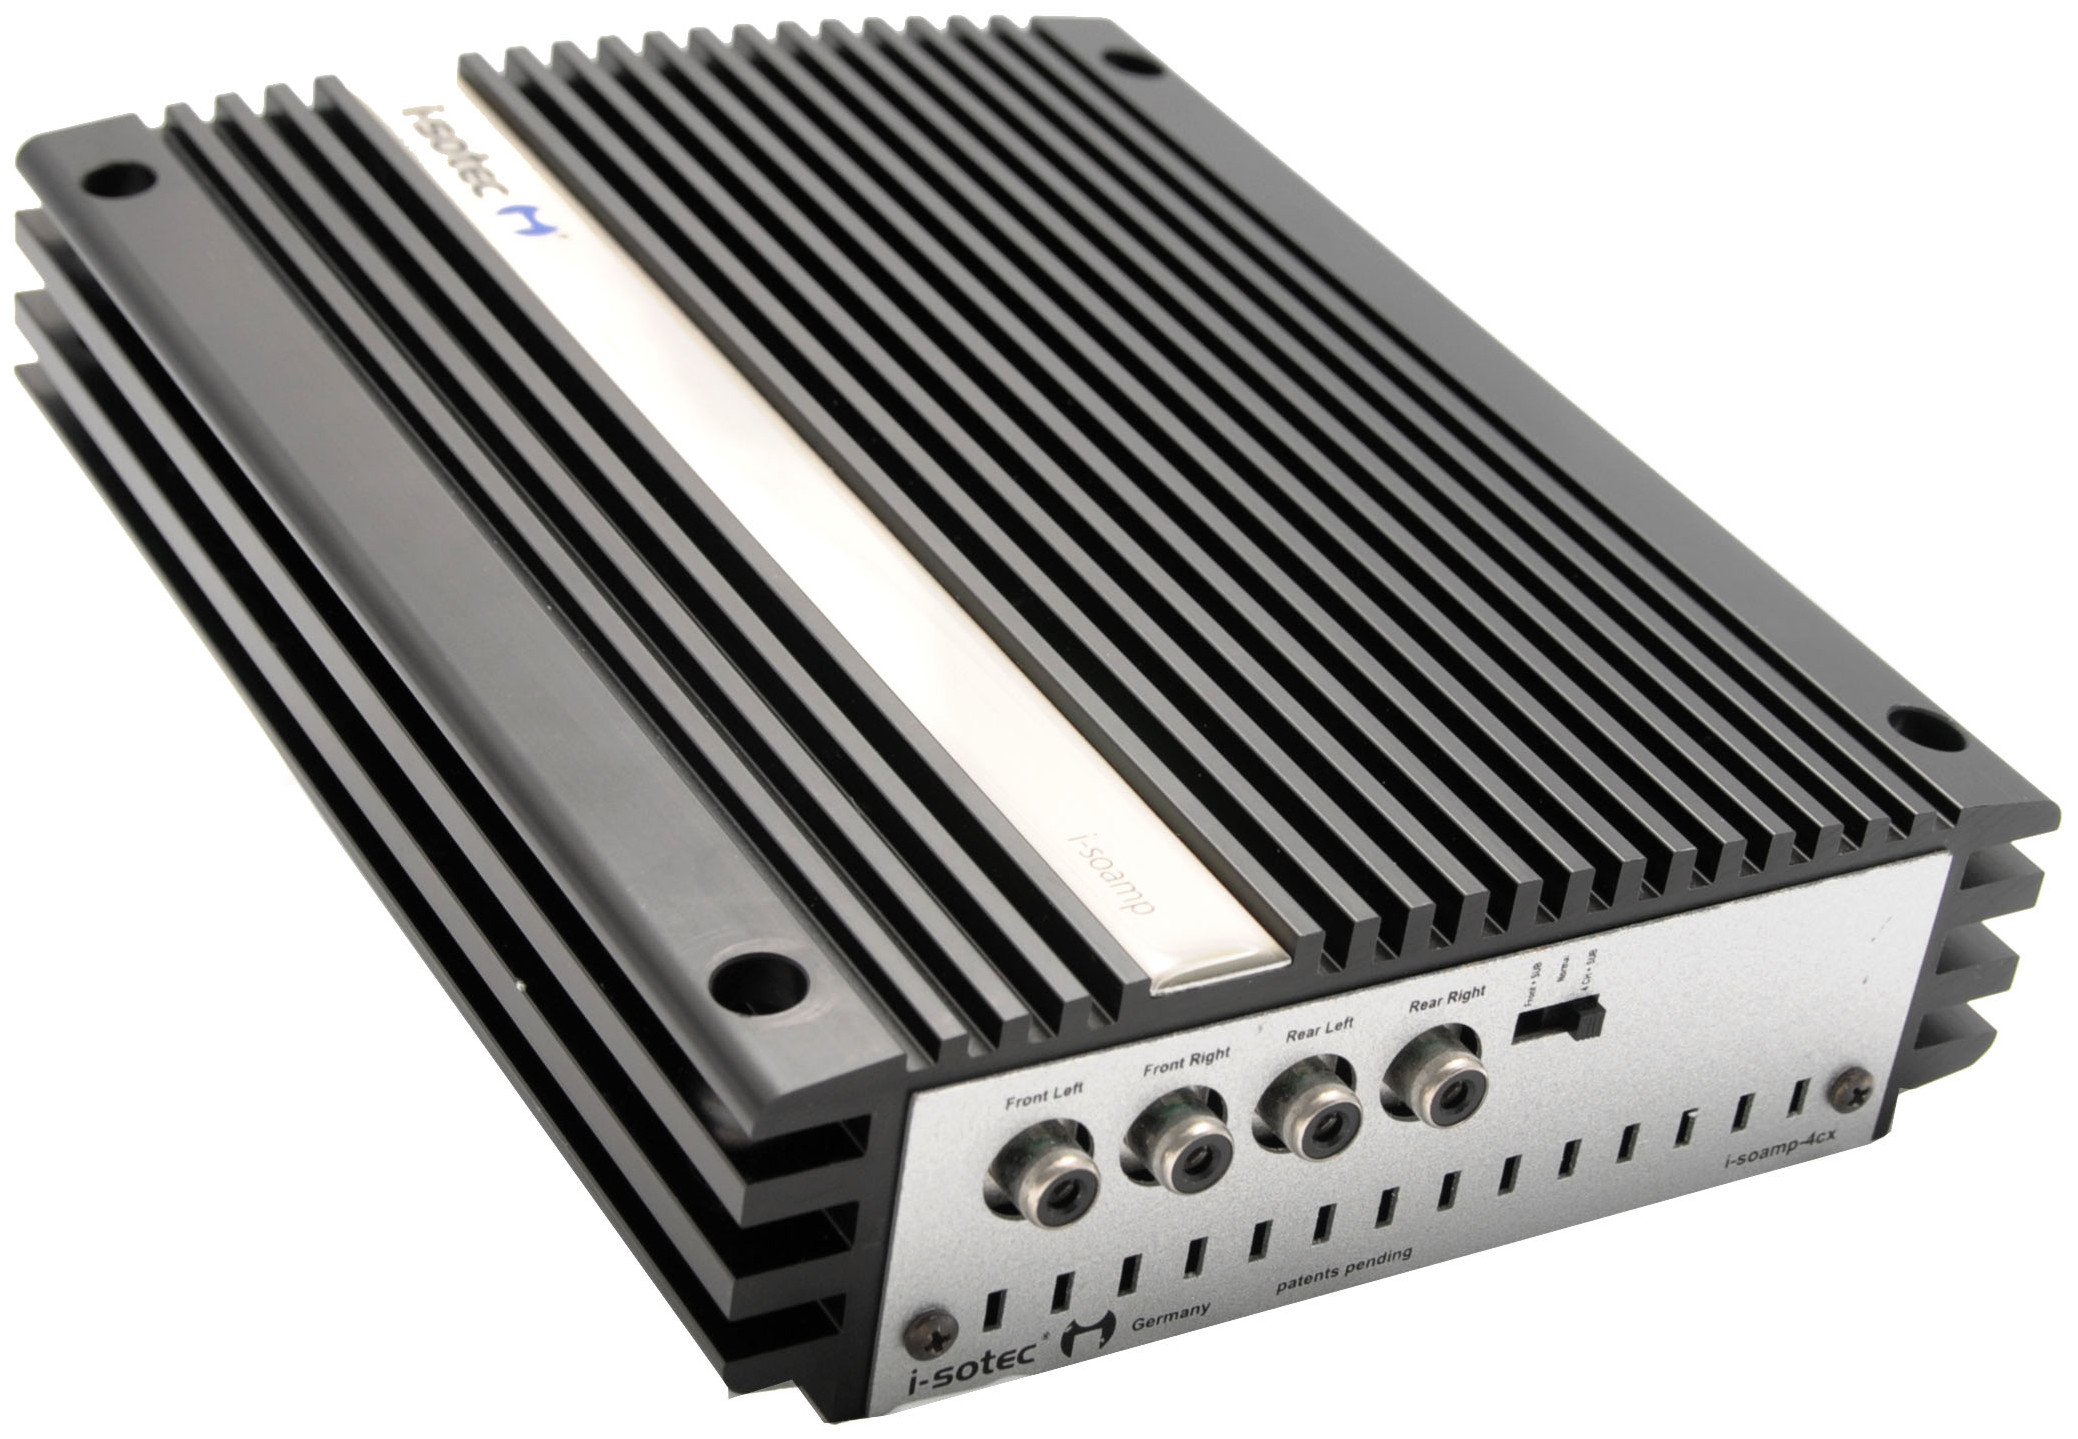 Nachrüstsatz Soundupgrade für smart fortwo Modell 451 mit ISO-Adapter-Kabelsatz